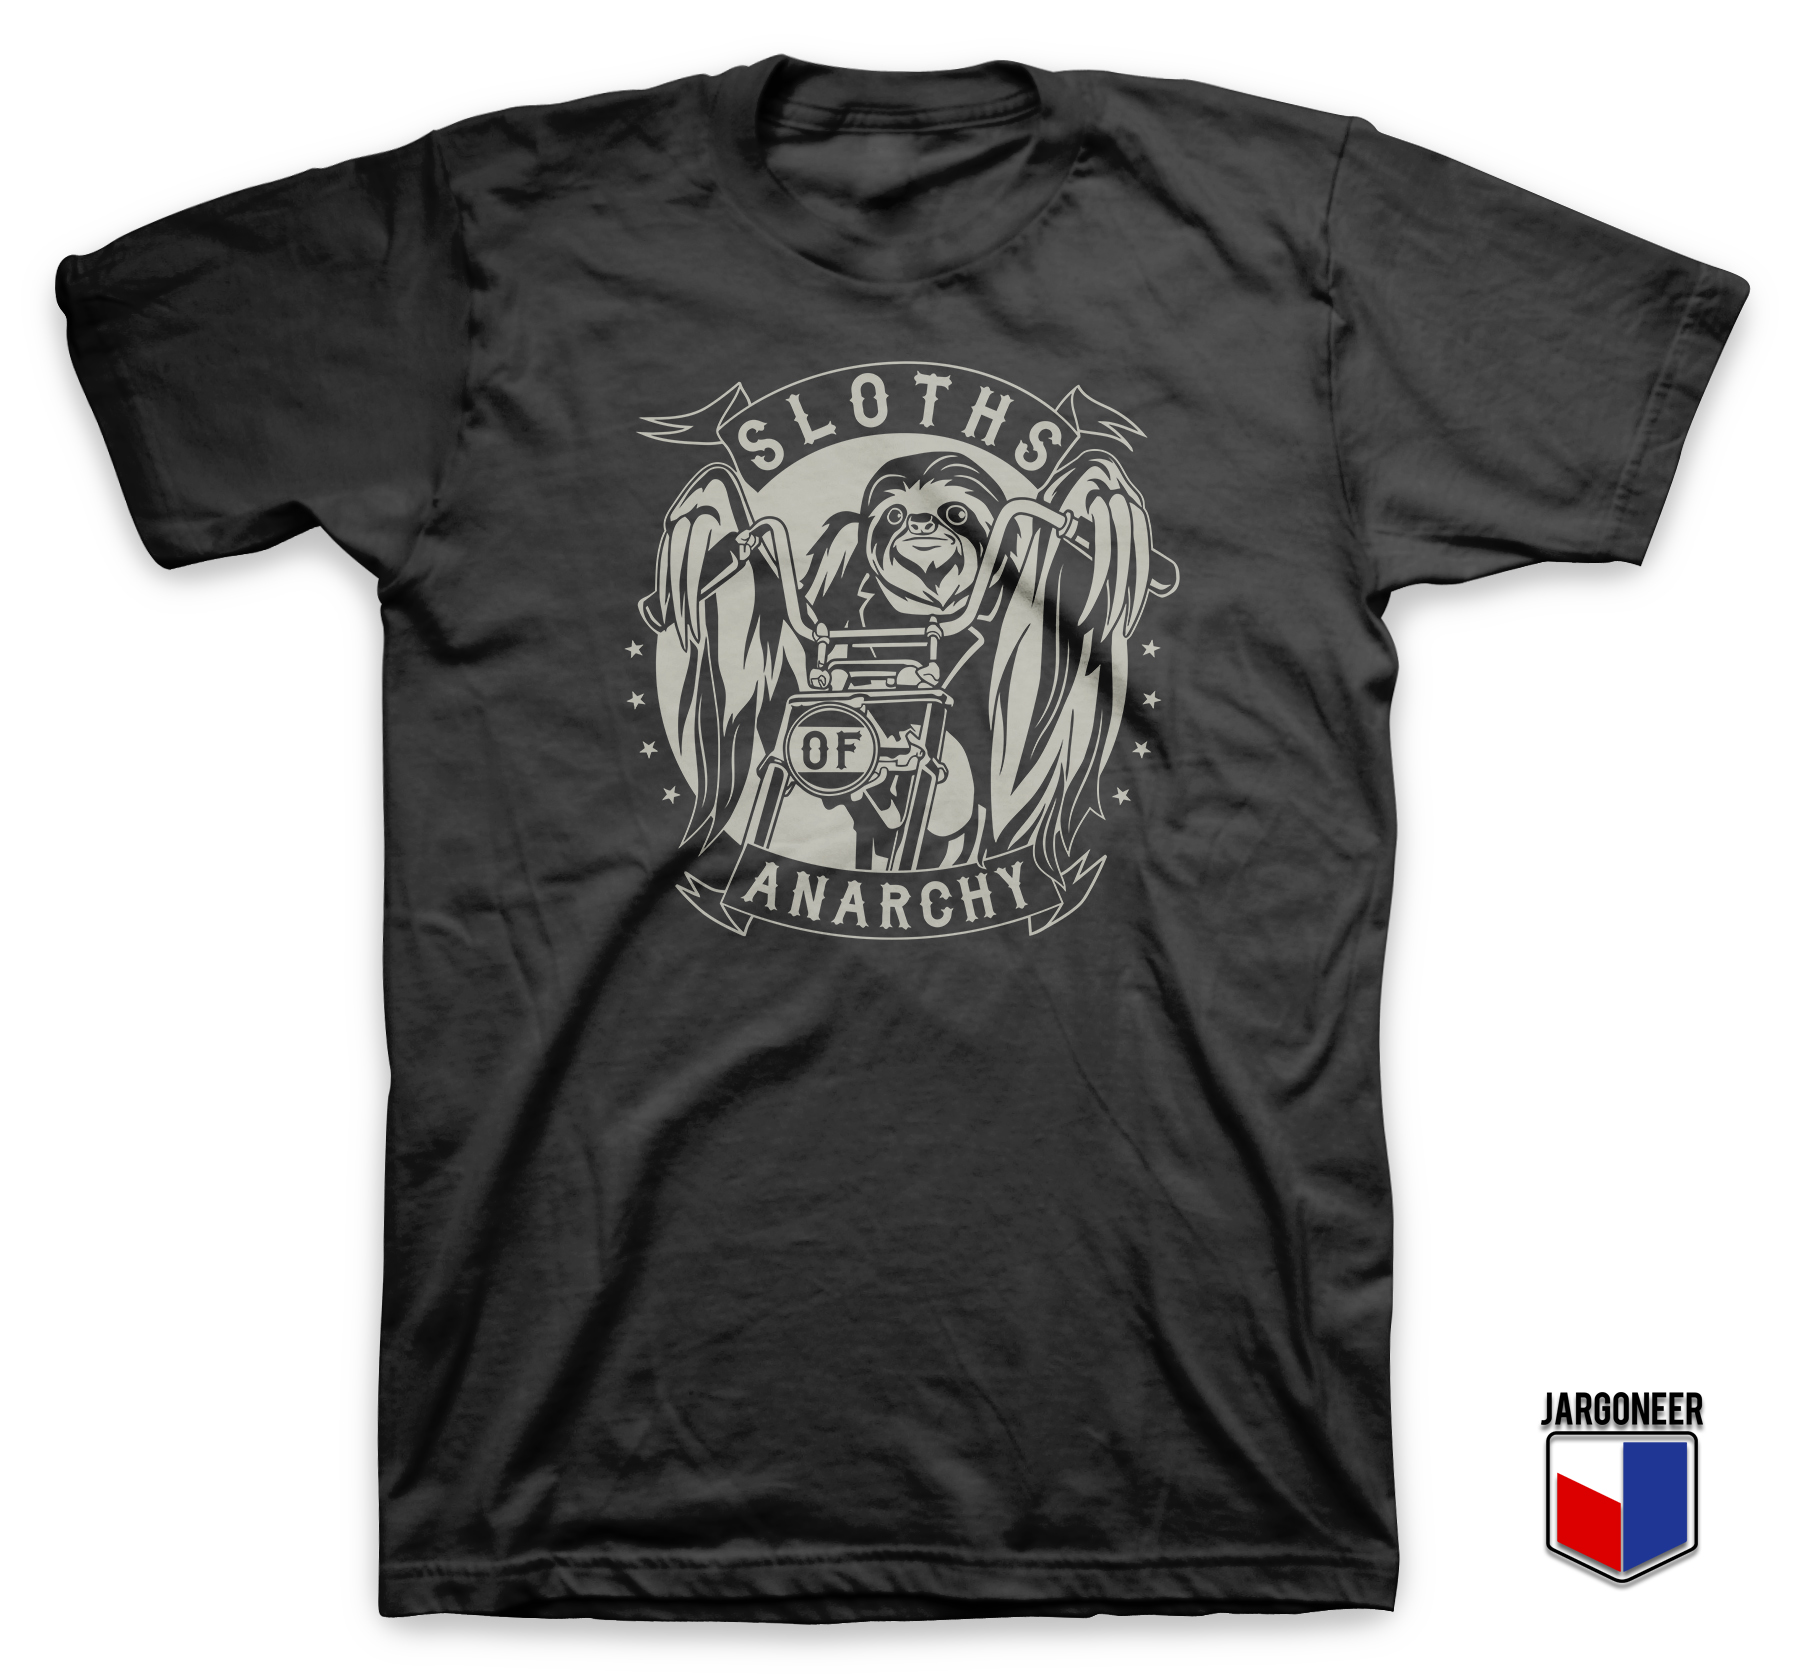 Sloths Of Anarchy - Shop Unique Graphic Cool Shirt Designs